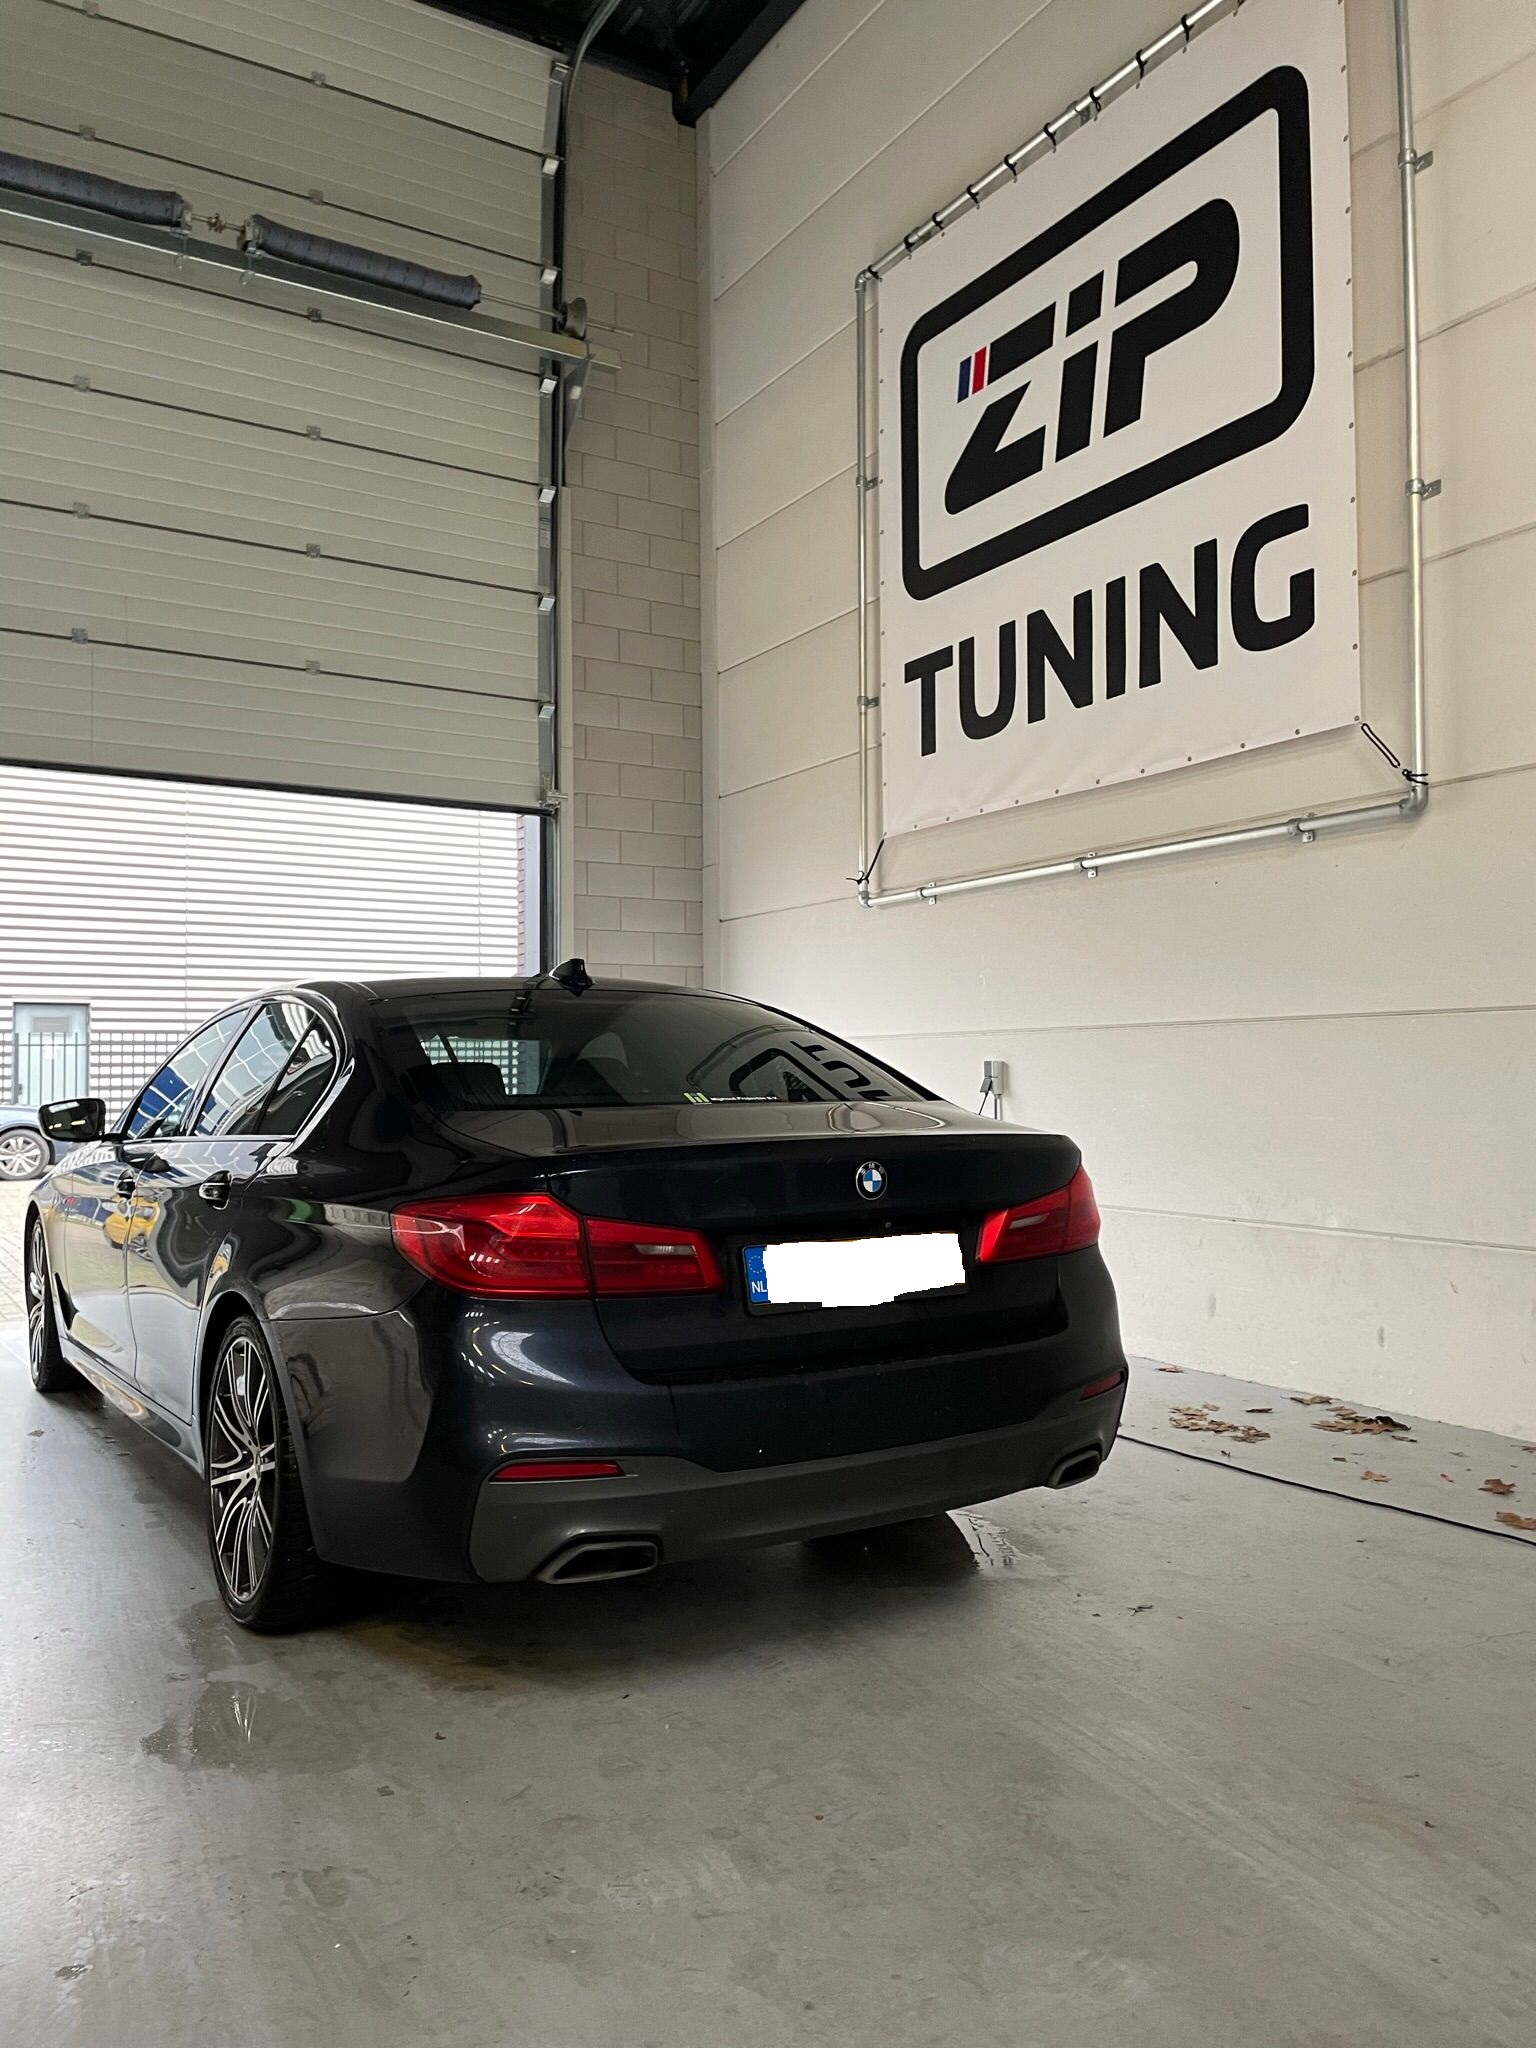 ZIPTUNING TUNING WEKELIJKS BINNENKOMENDE FAVORIET: BMW 520 I 2017-2018-2019  - 2020 + Stage 1 Gearbox Upgrade - ZIPtuning Blog